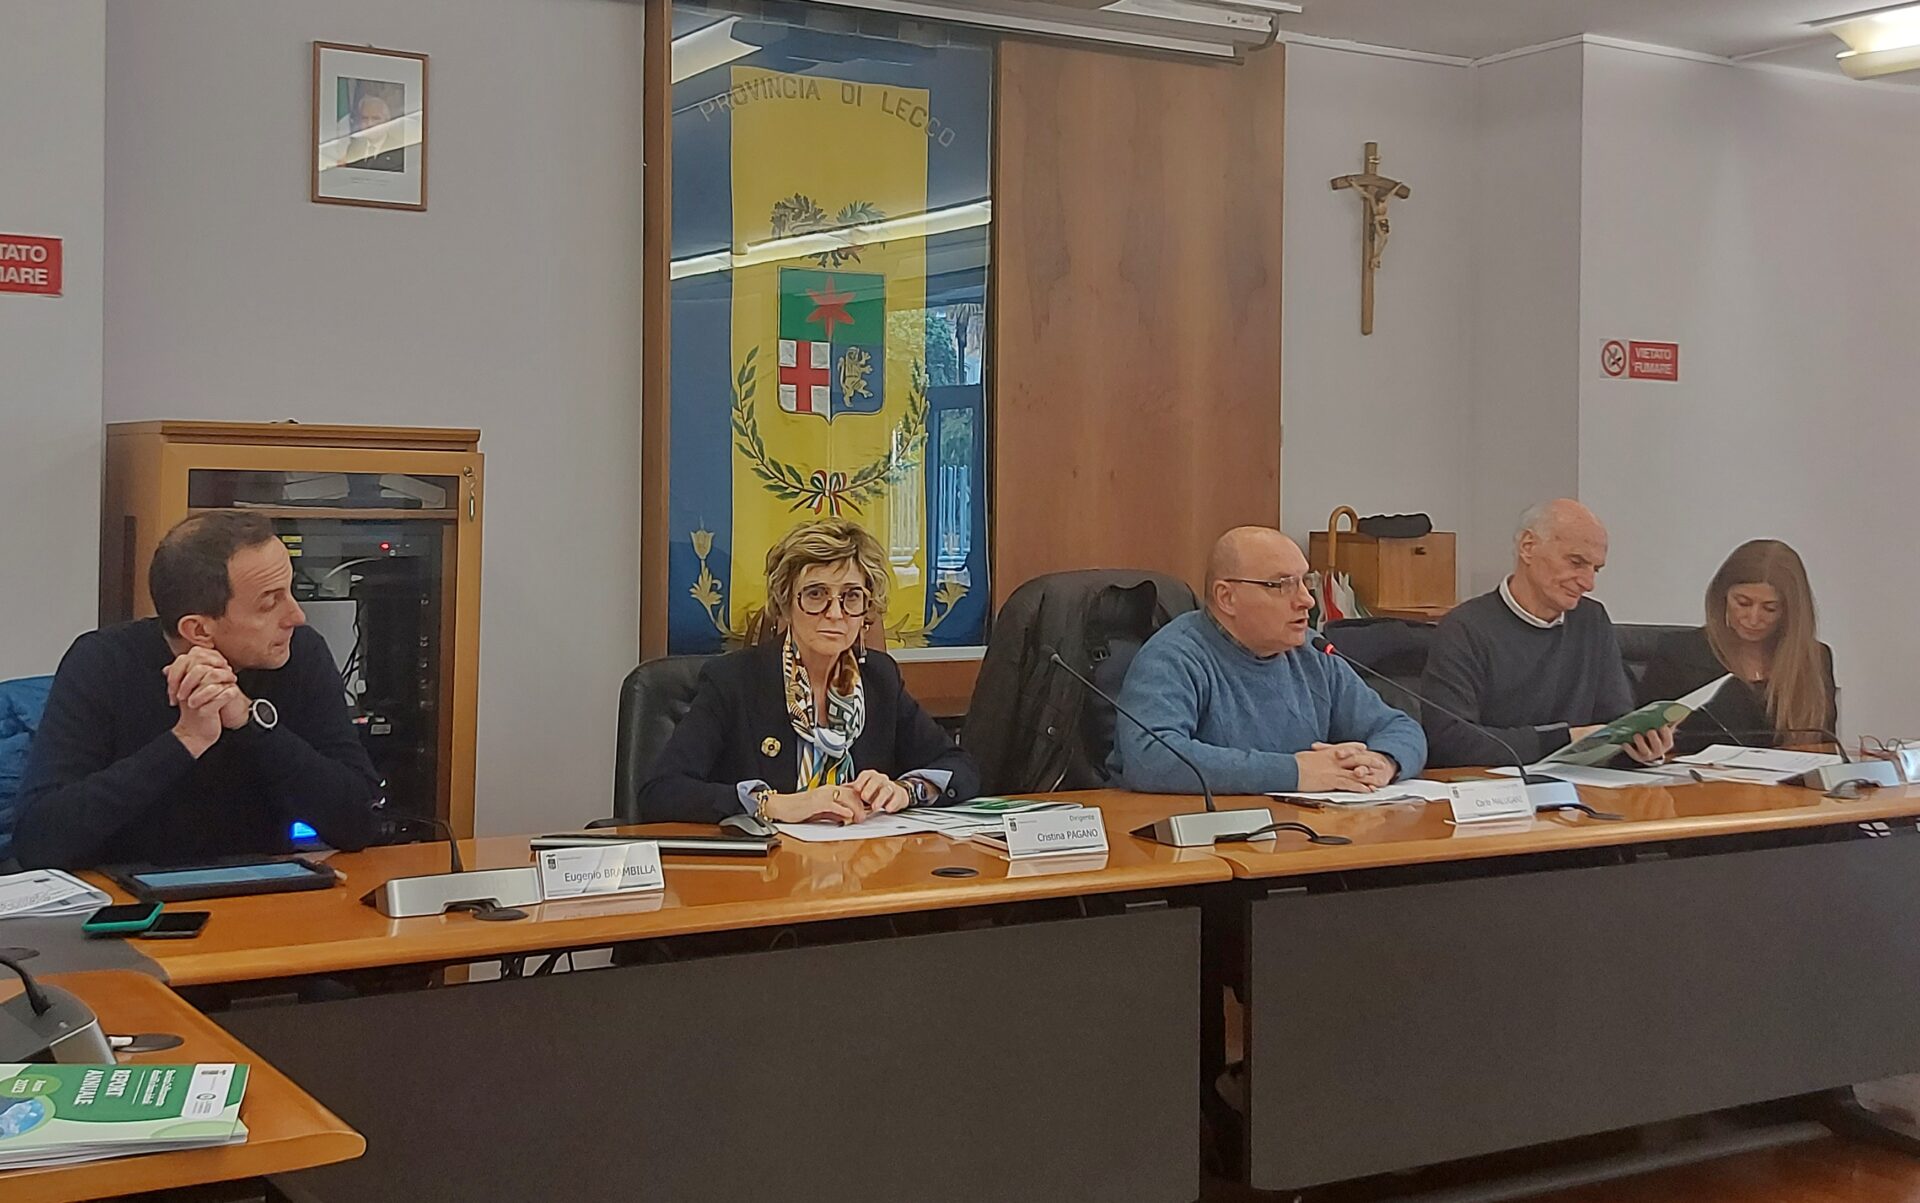 La Provincia di Lecco ha presentato i dati e i progetti realizzati.